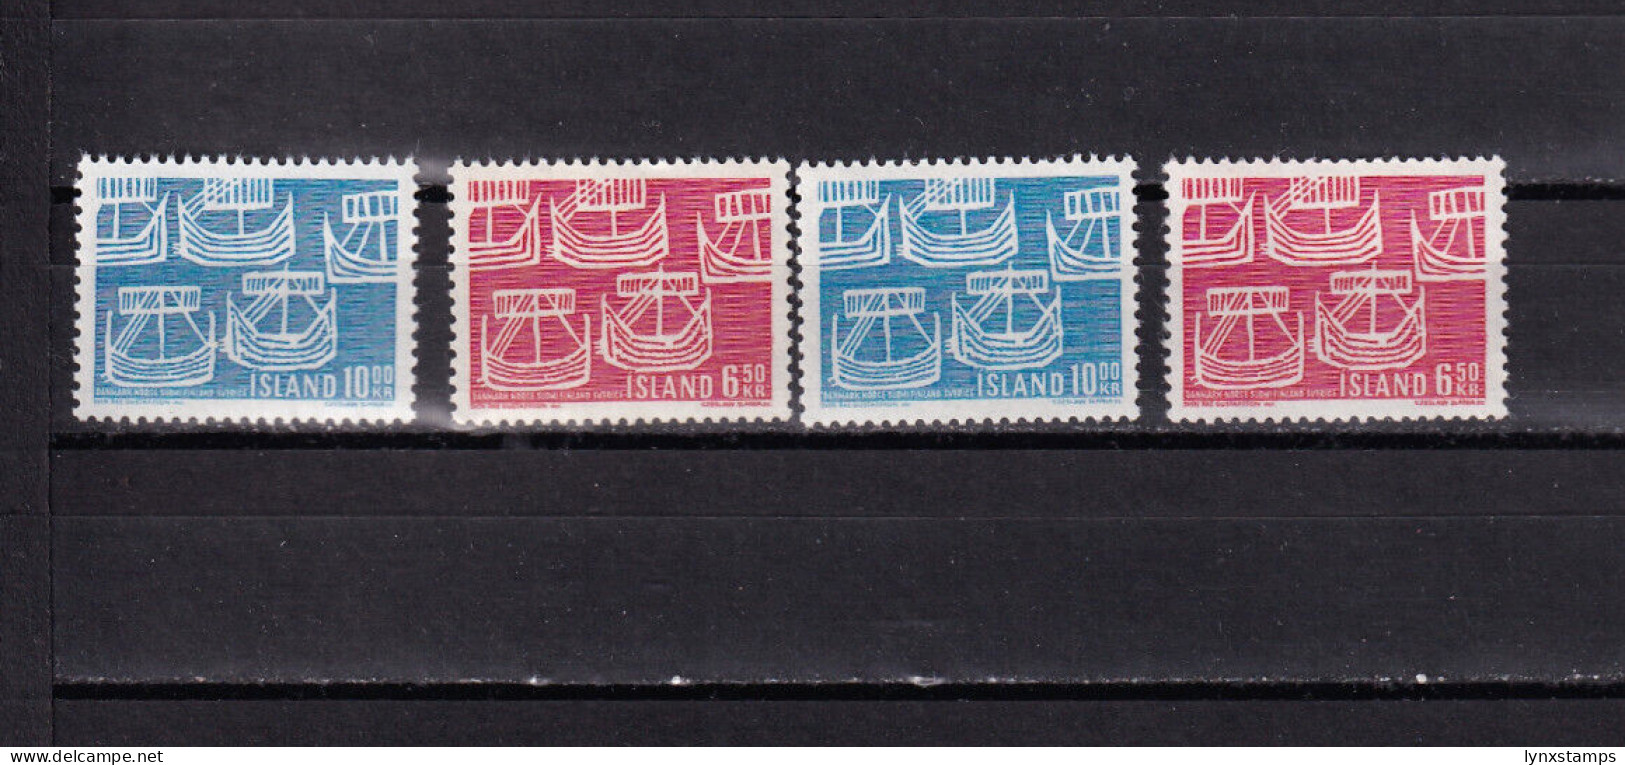 LI03 Iceland 1969 Norden Mint Stamps Selection - Ongebruikt